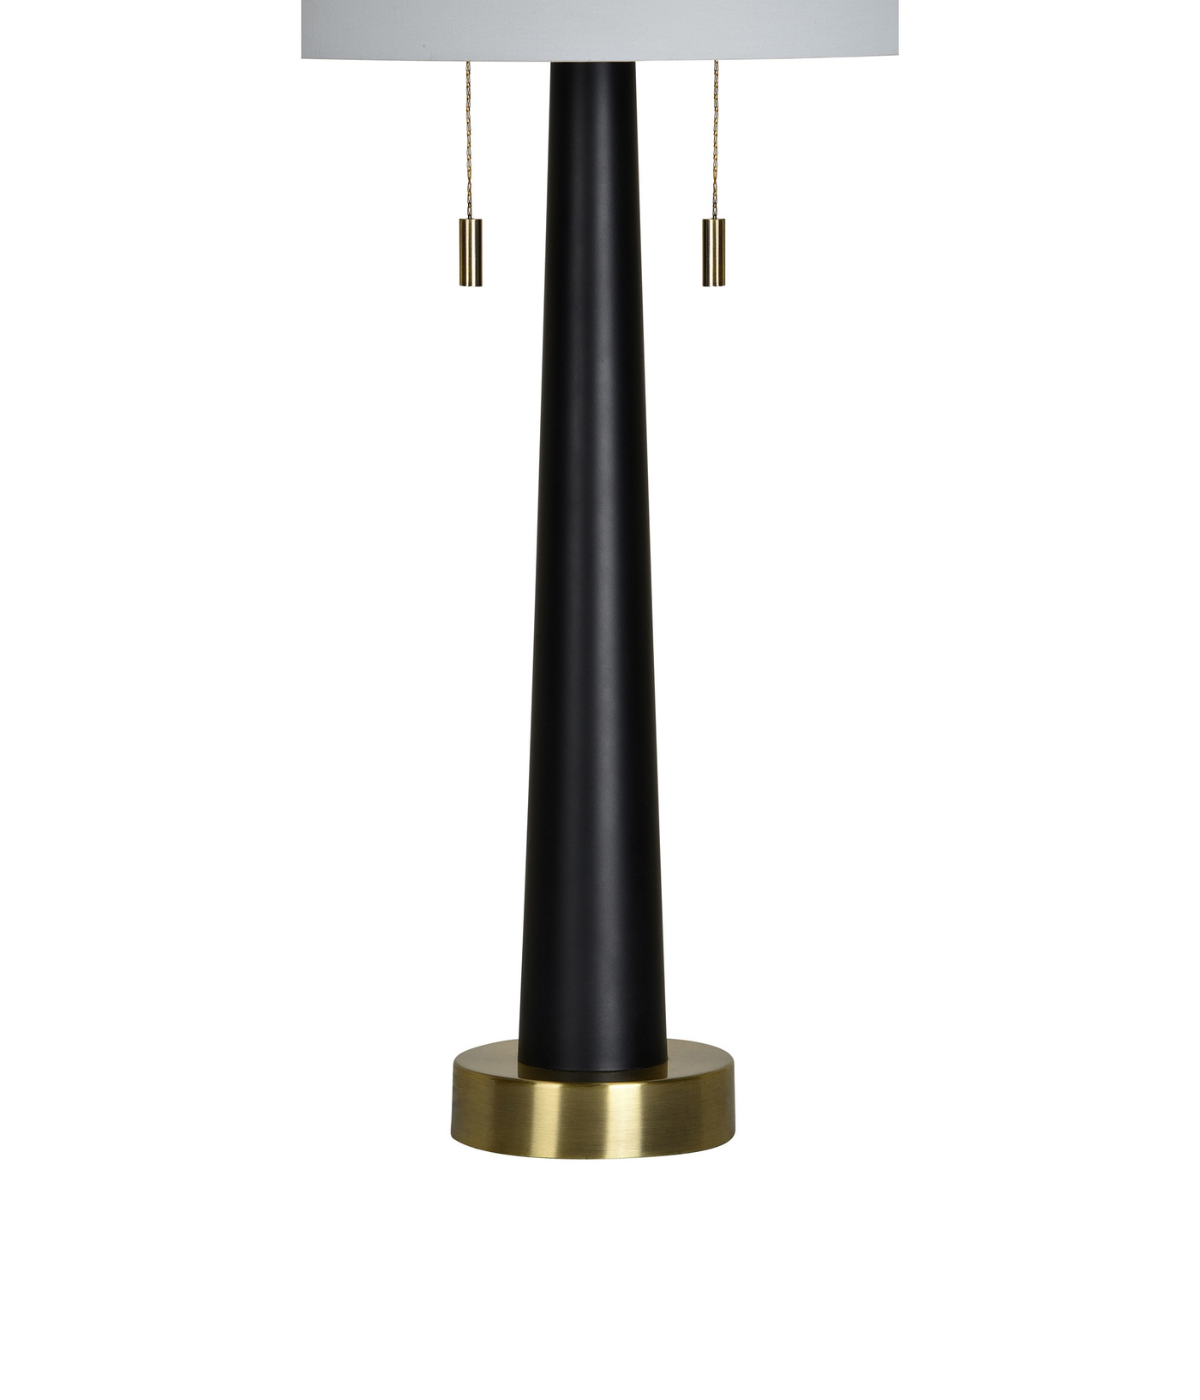 Dane Table Lamp